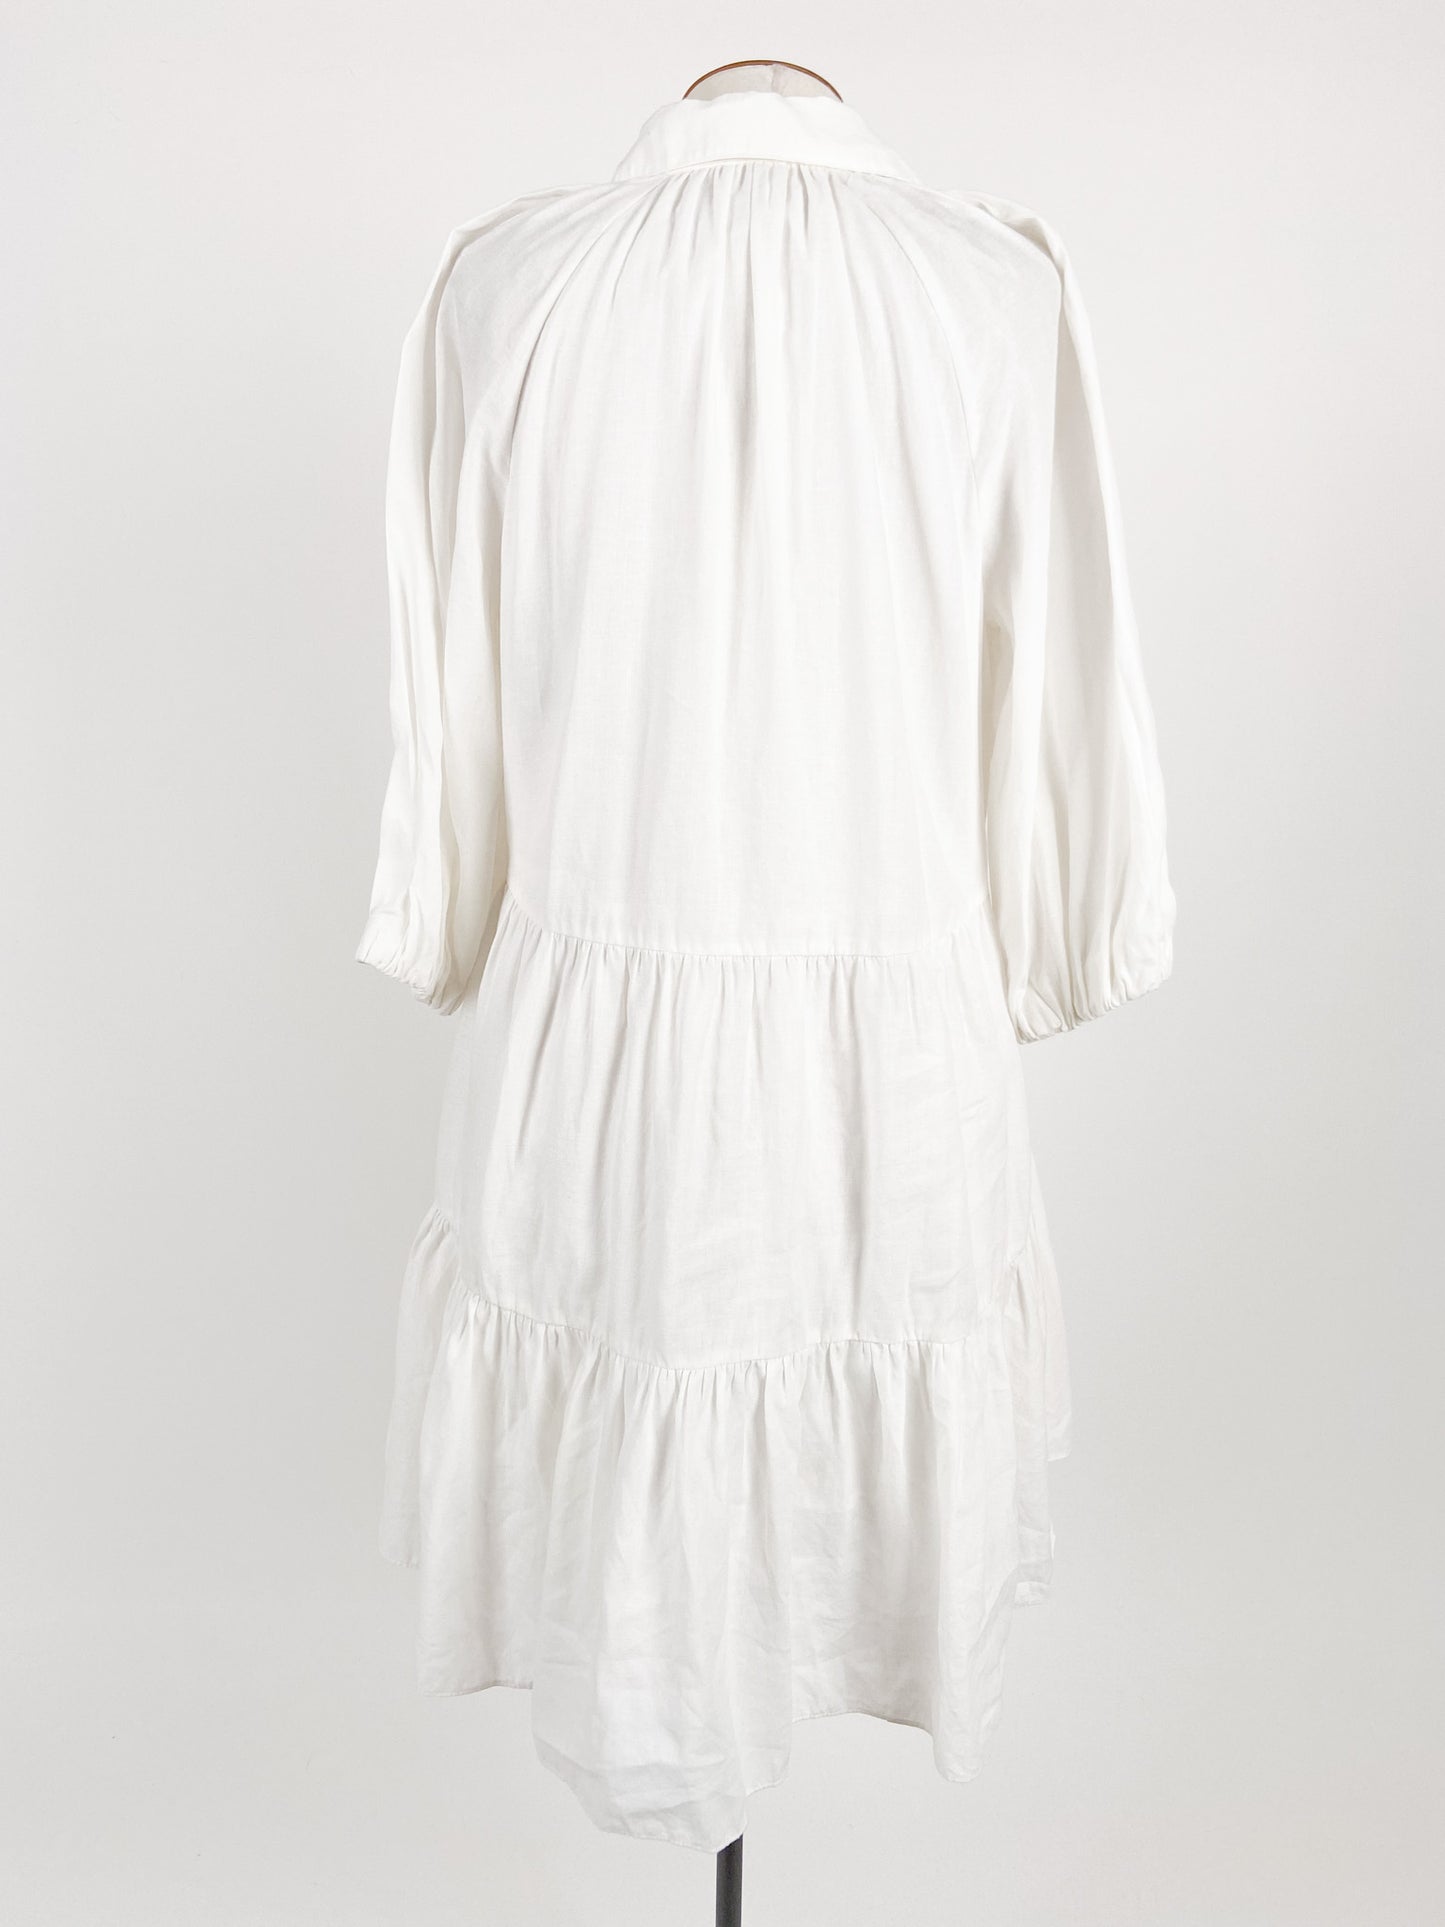 Witchery | White Casual/Workwear Dress | Size 12